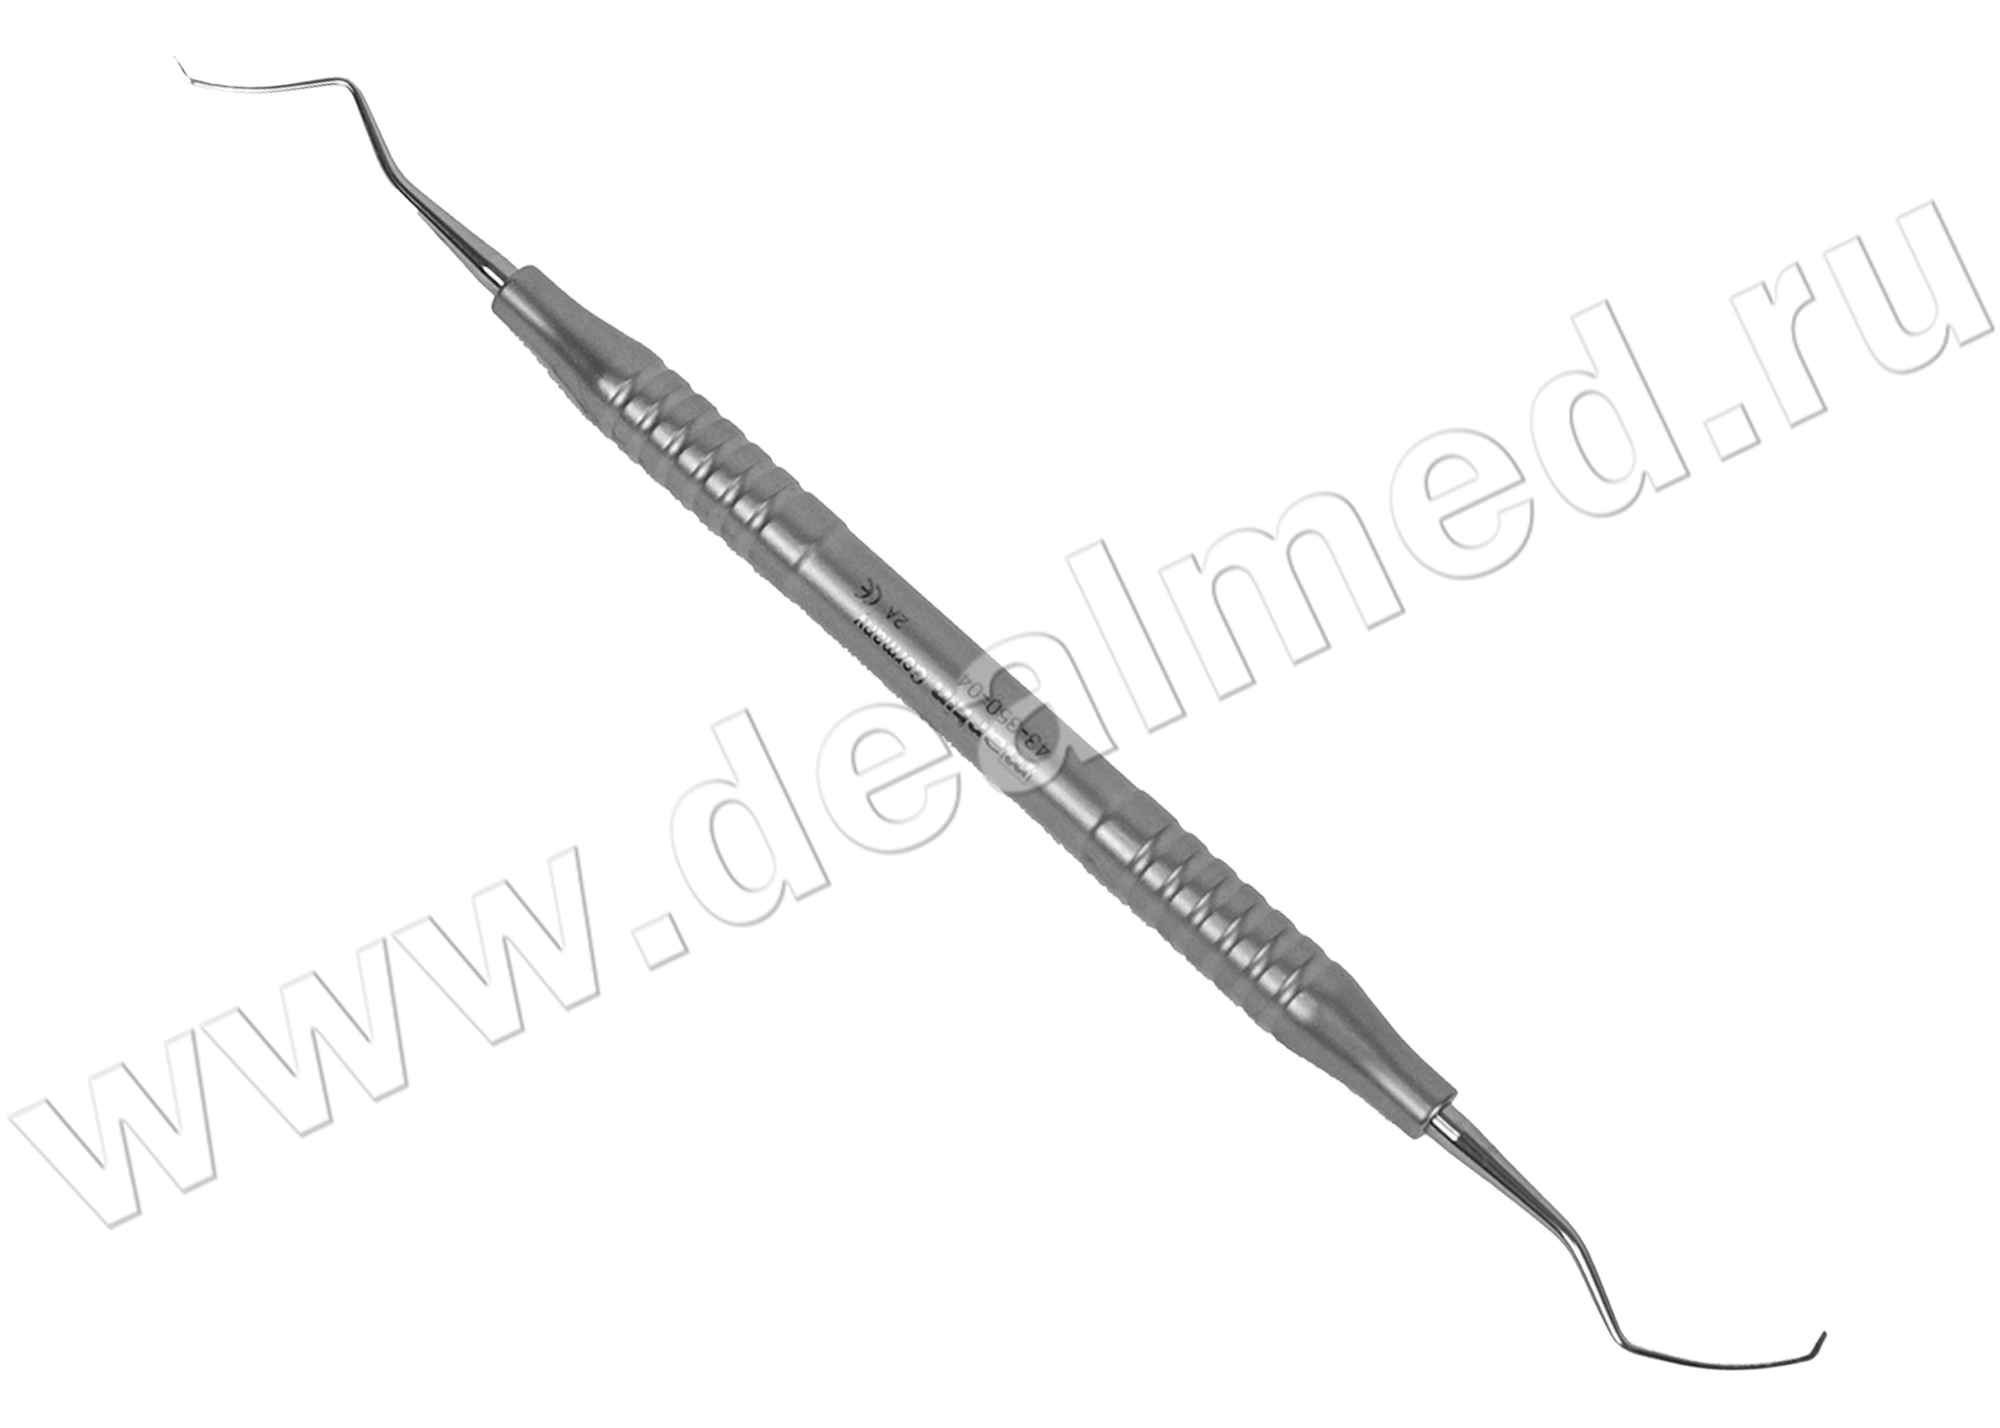 Кюрета стоматологическая, модель 4 длина 1,3 мм 17,5 см, пустотелая ручка (арт. 43-350-04-07) KLS Martin, Германия